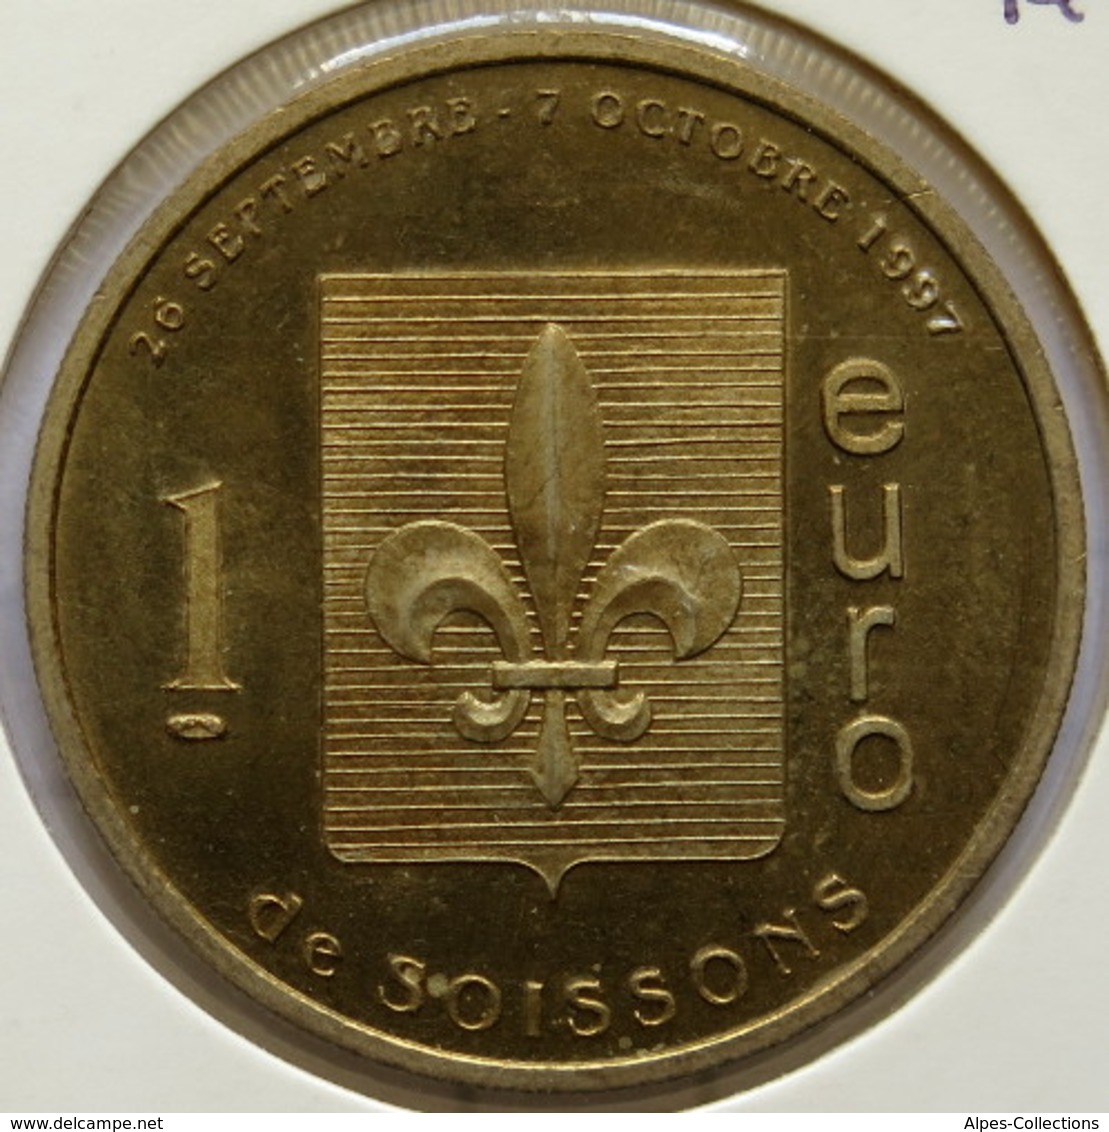 SOISSONS - EU0010.1 - 1 EURO DES VILLES - Réf: T391 - 1997 - Euros Of The Cities